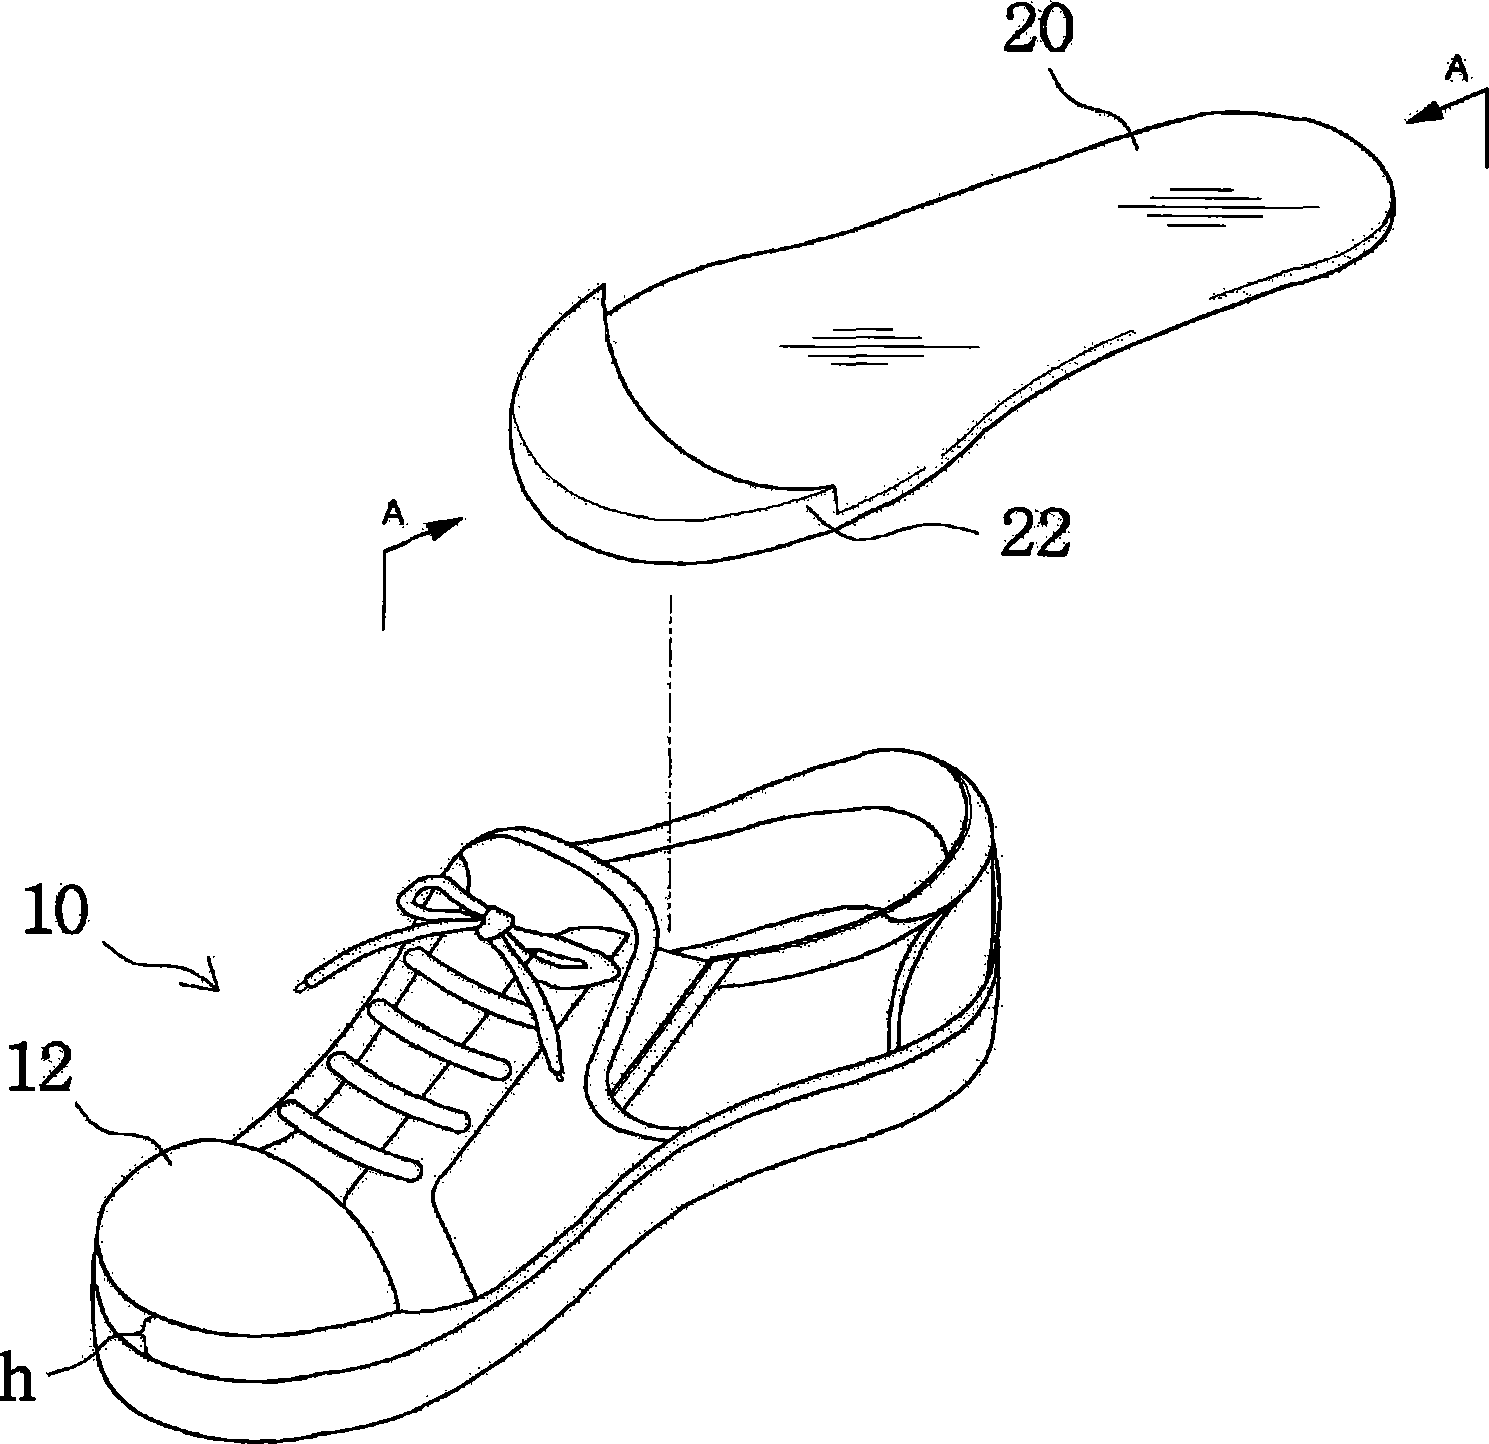 Functional footwear